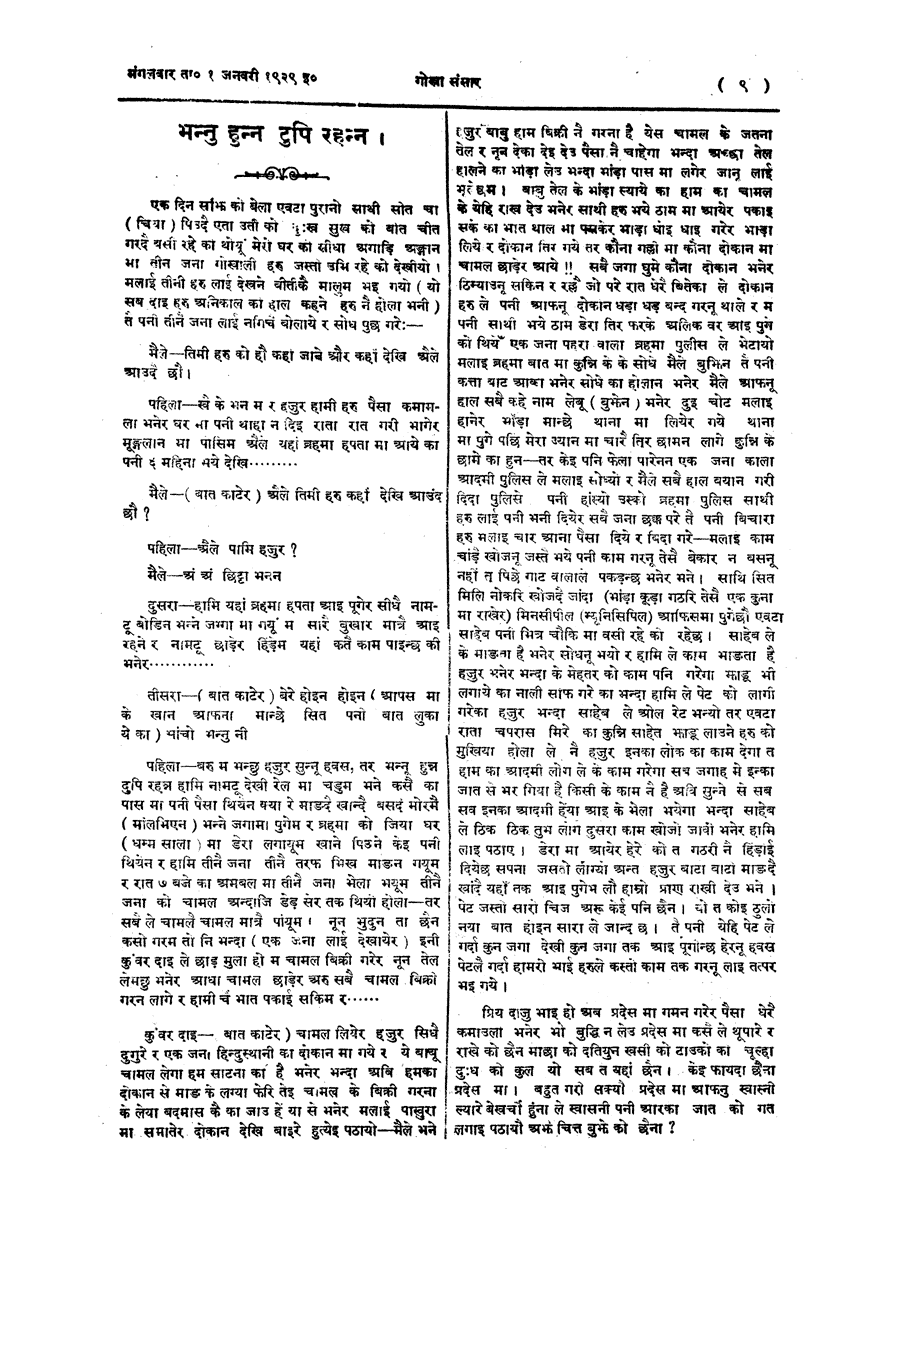 Gorkha Sansar, 1 Jan 1929, page 9